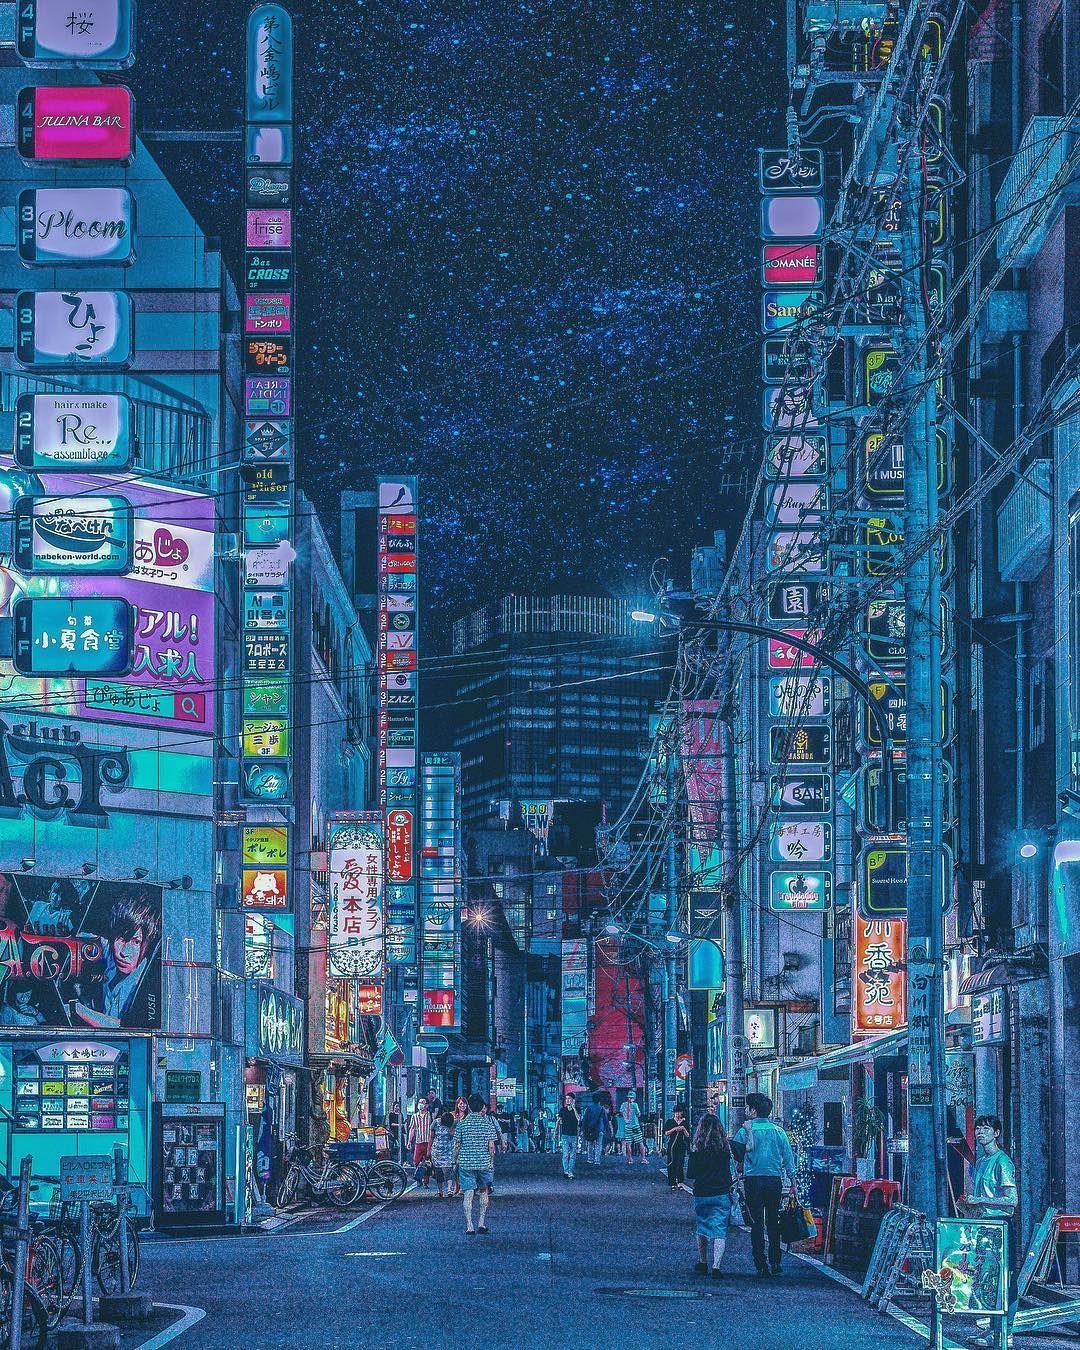 Nightlife in Tokyo's Streets